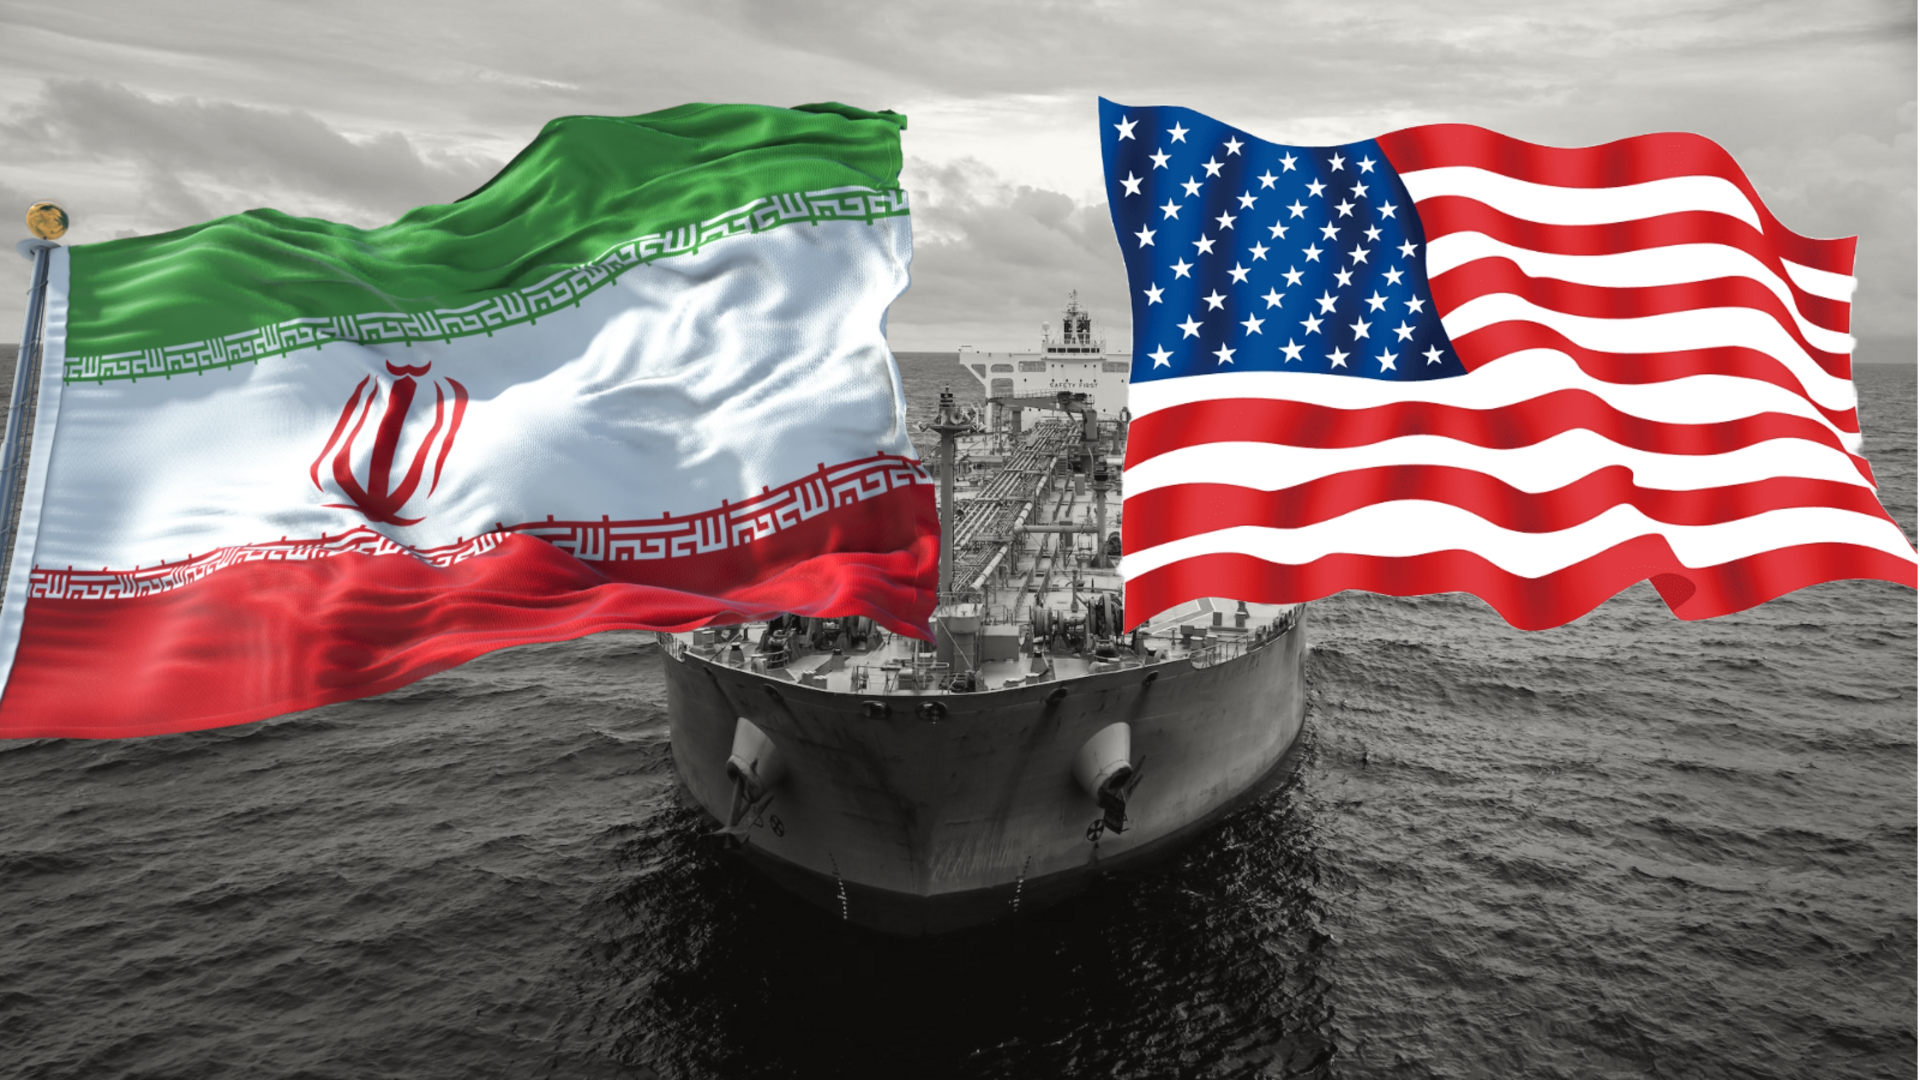 भारत के पास टैंकर को निशाना बनाने के अमेरिकी दावे को ईरान ने किया खारिज